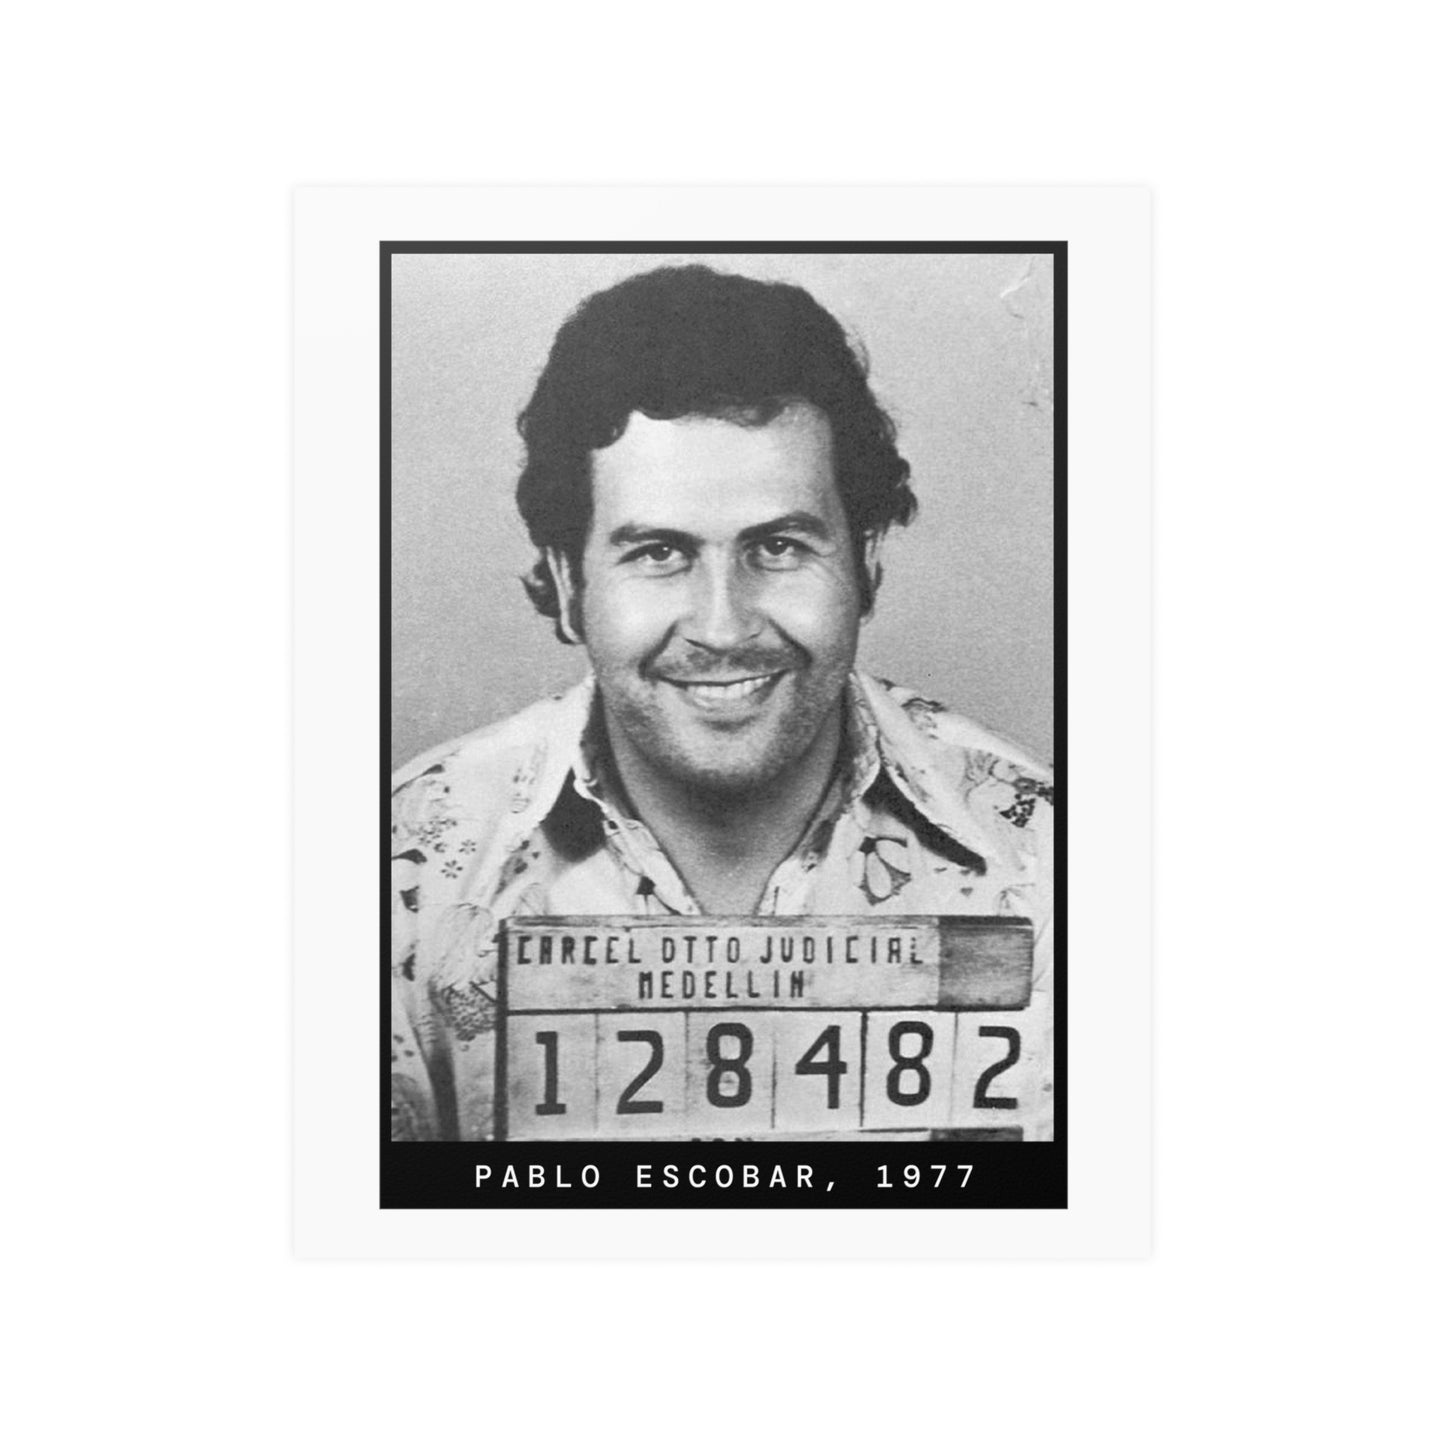 Pablo Escobar, 1977 Mugshot Poster